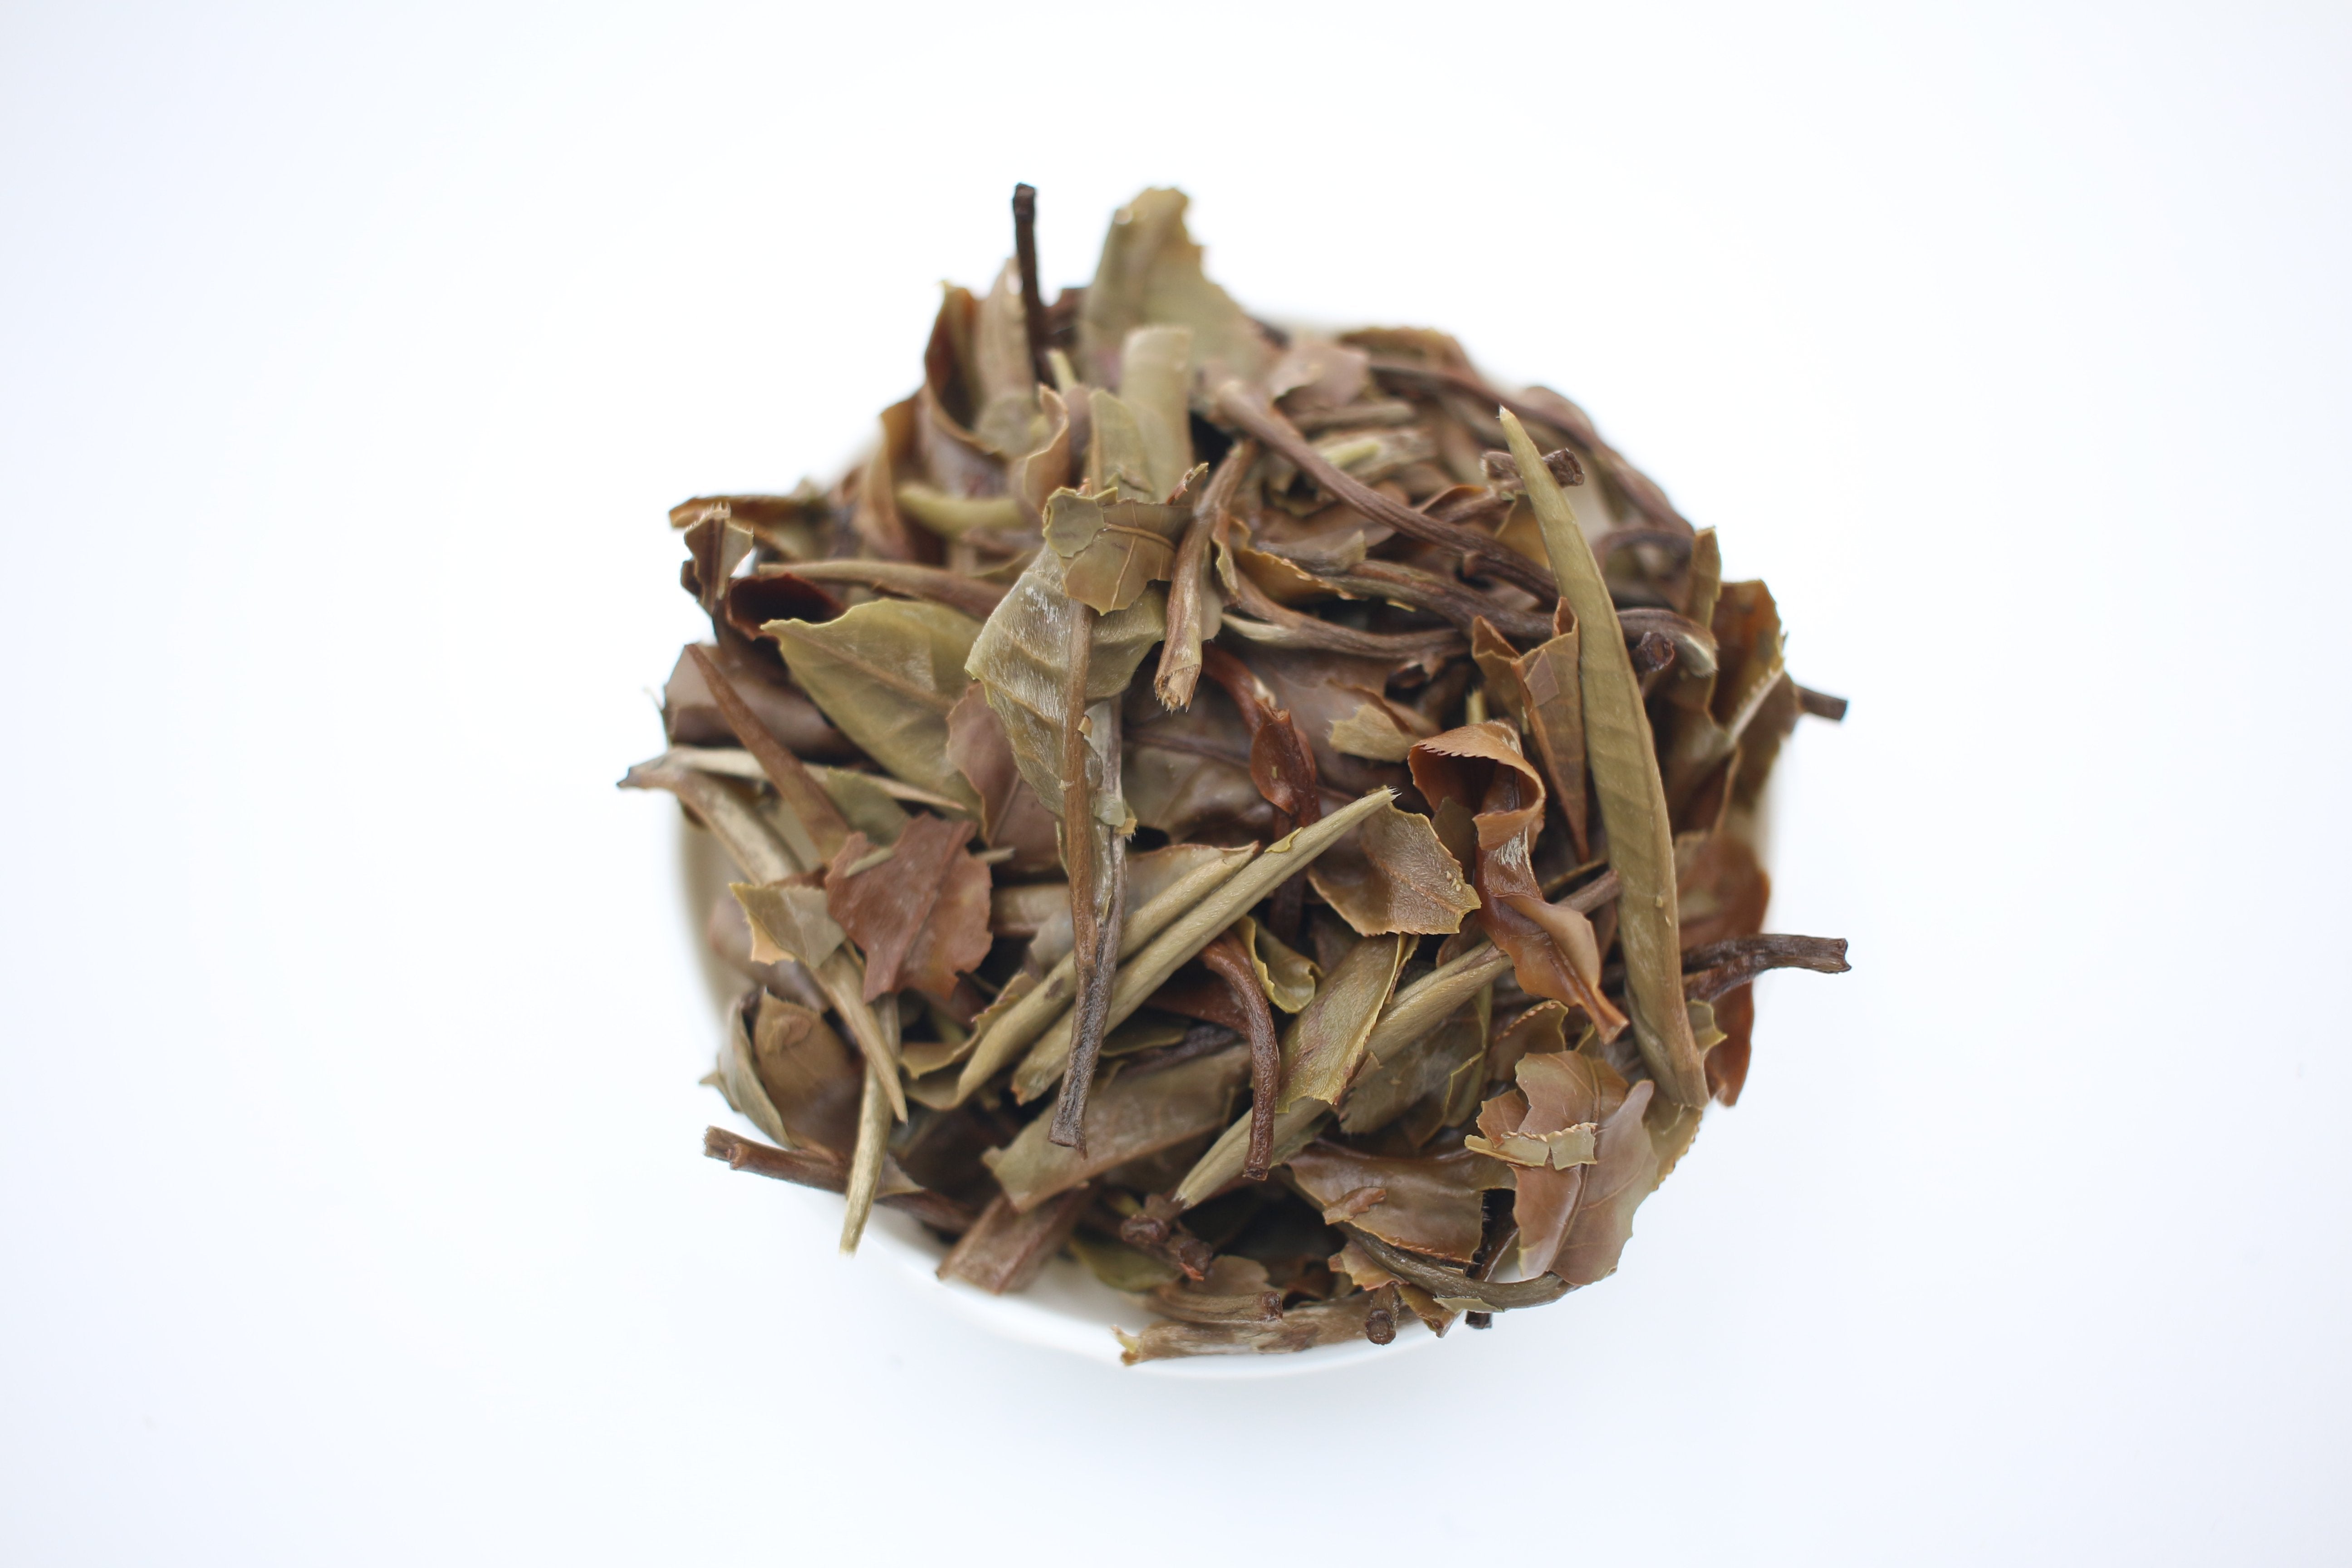 China "Yue Guang Bai" White Tea